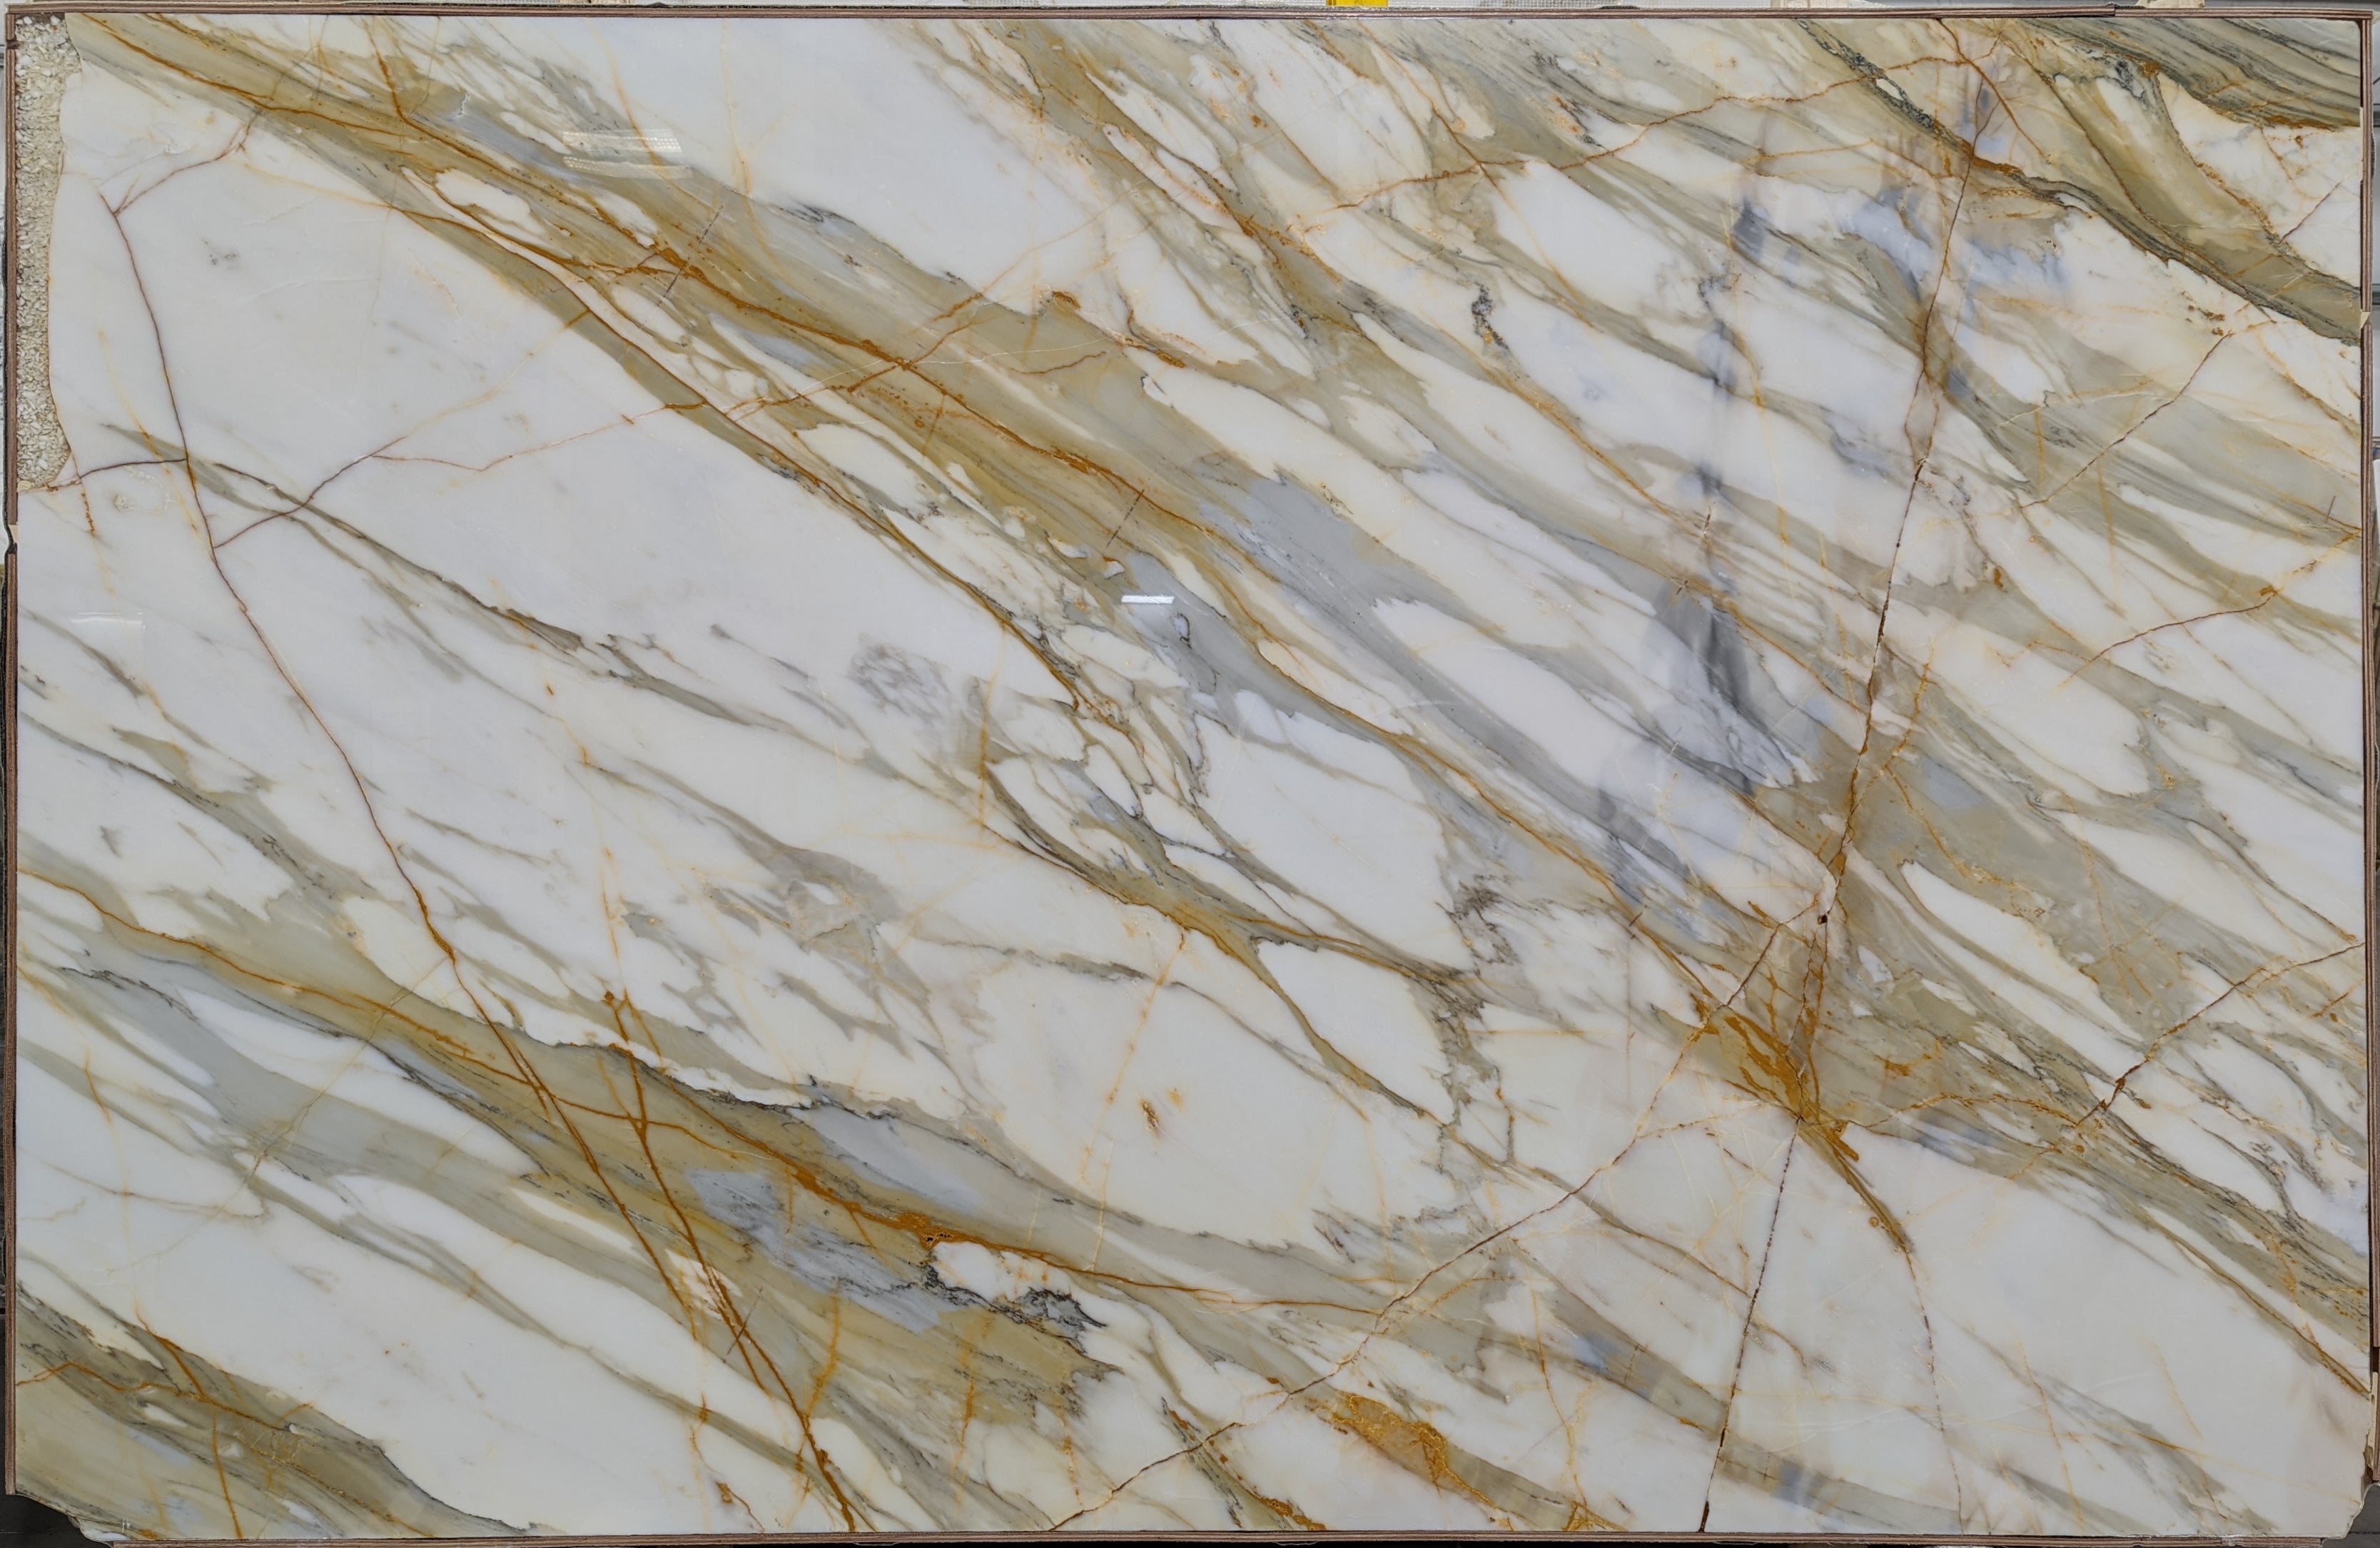  Calacatta Macchia Vecchia Marble Slab 3/4 - 26092#09 -  69x107 